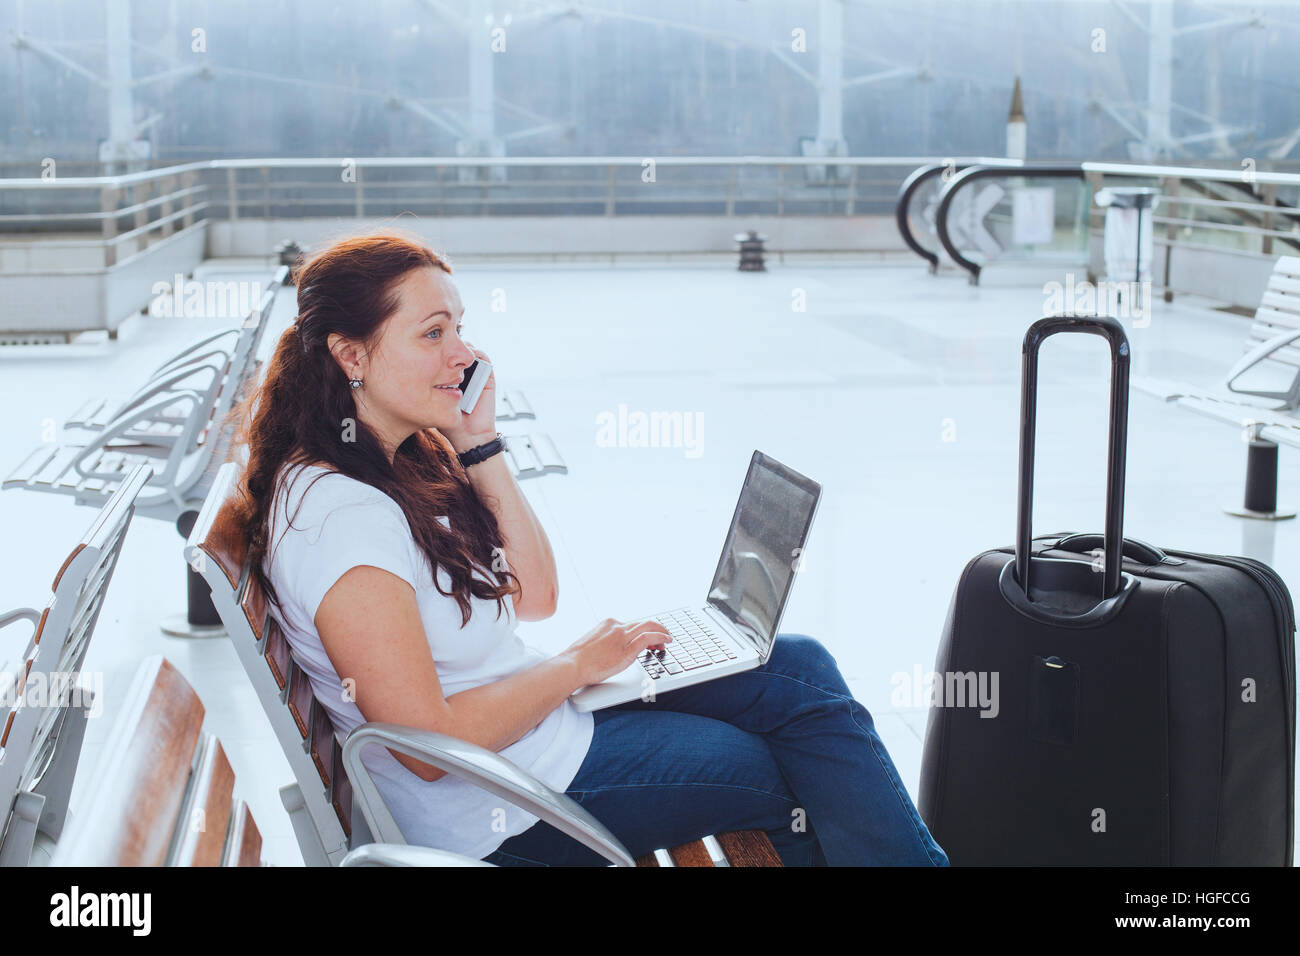 Frau im Flughafen im Gespräch per Telefon und e-Mails am Laptop, Geschäftsreisen, mobile WiFi-Verbindung Stockfoto